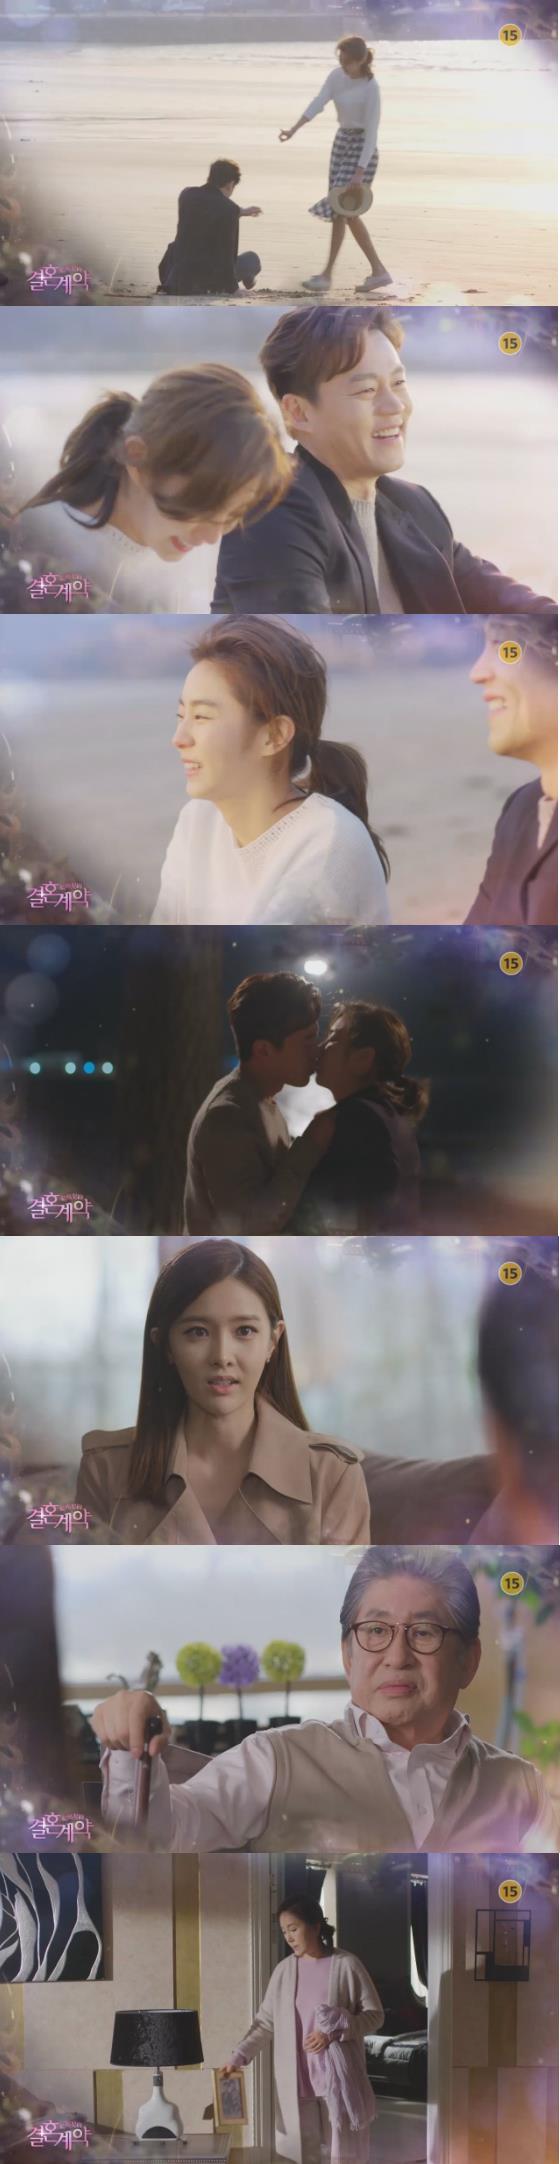 2일밤 방송되는 MBC 주말드라마 '결혼계약'에서 한지훈(이서진)은 강혜수(유이)와 이별여행지에서 첫 키스를 나눈다./사진=MBC 방송 캡처